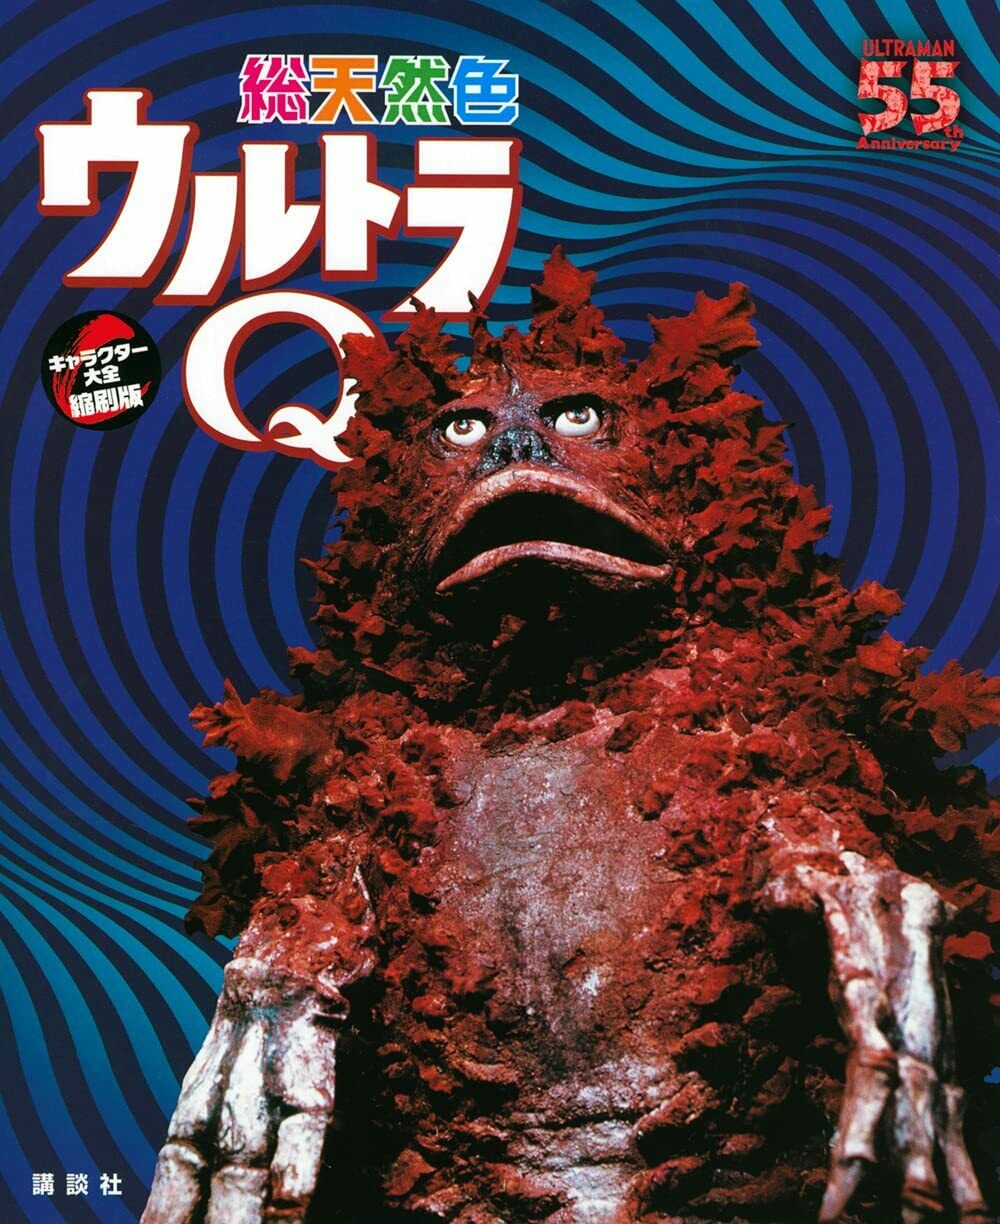 NEW Ultra Q Character Taizen | JAPAN Book Tokusatsu Kaiju Monster